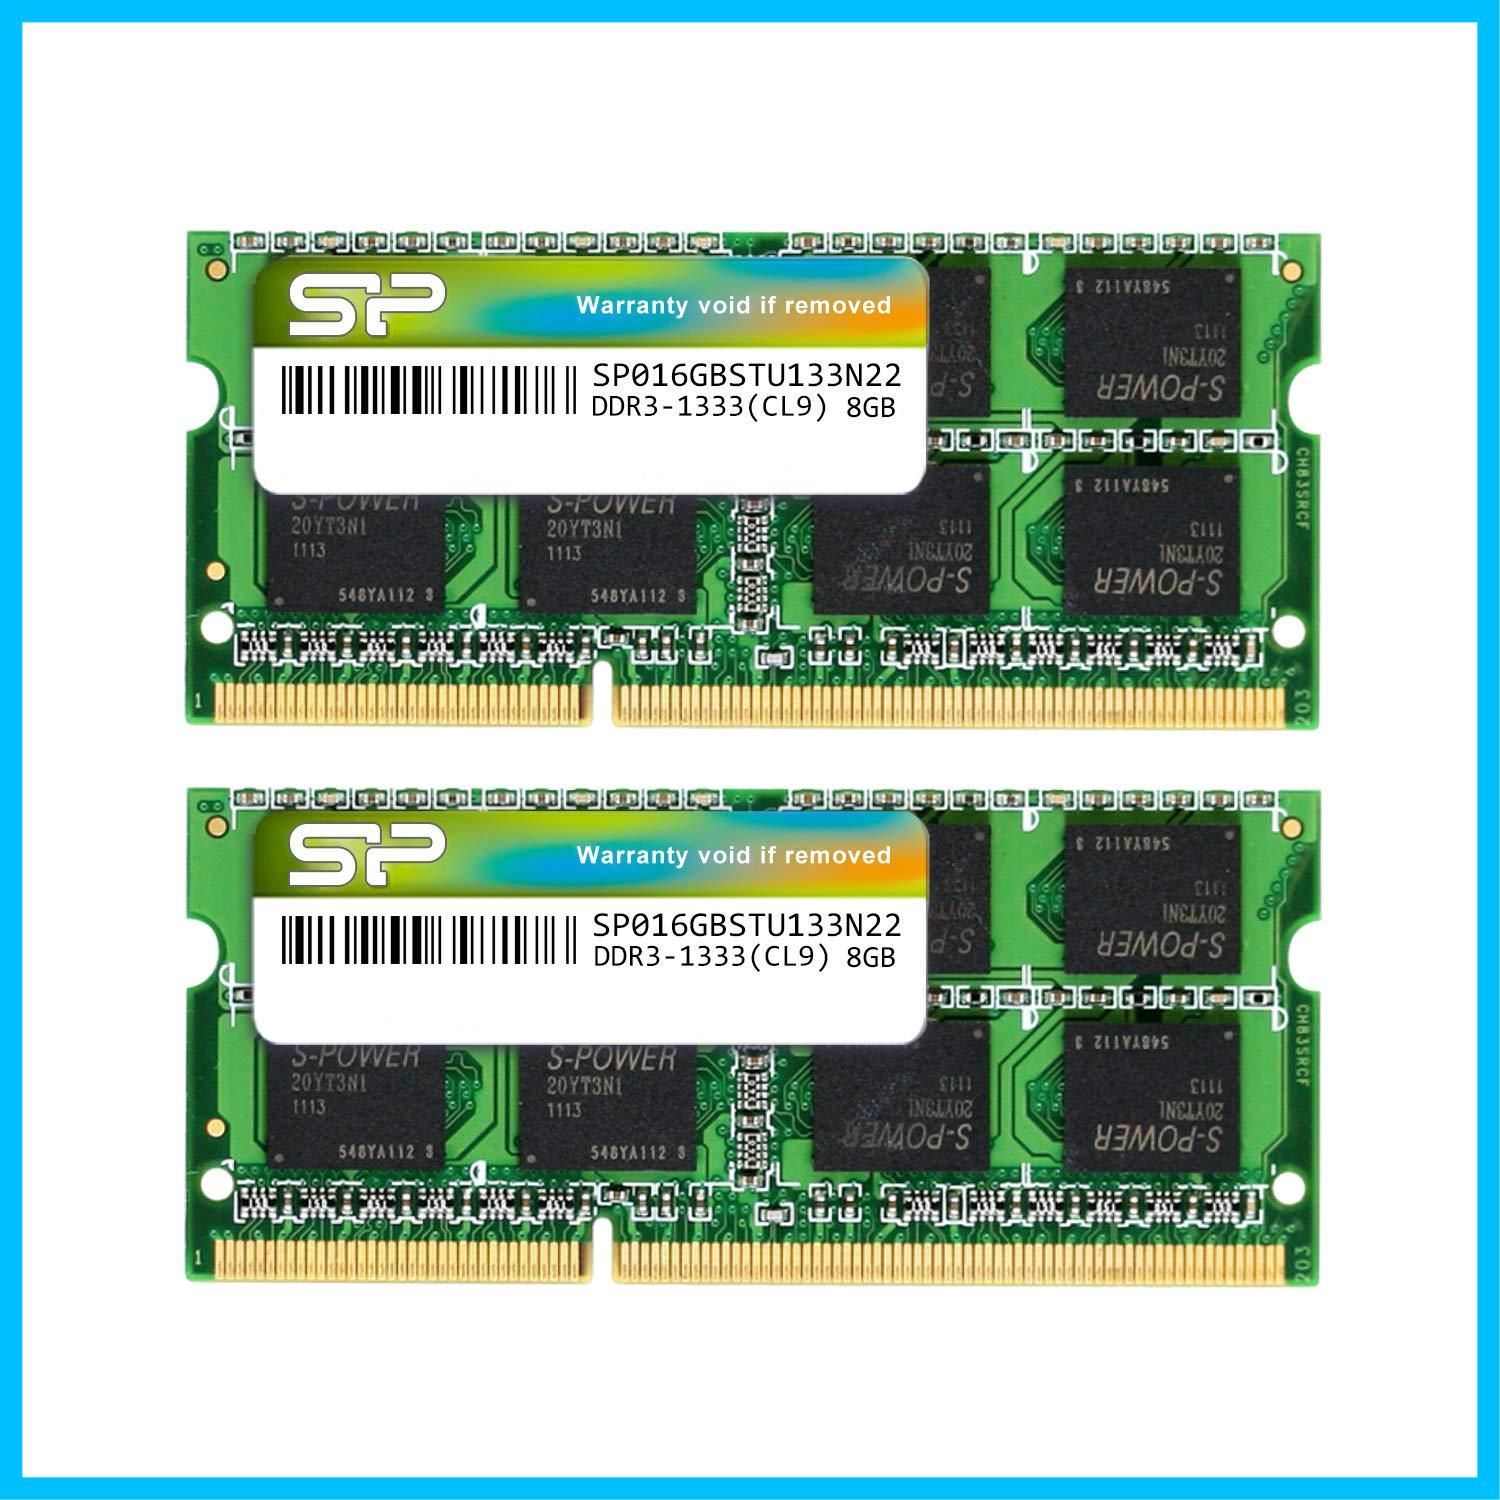 特価商品】PC3-10600 DDR3-1333 8GB×2枚組 SO-DIMM 204Pin SP016GBSTU133N22 ノートPC用メモリ  シリコンパワー - メルカリ